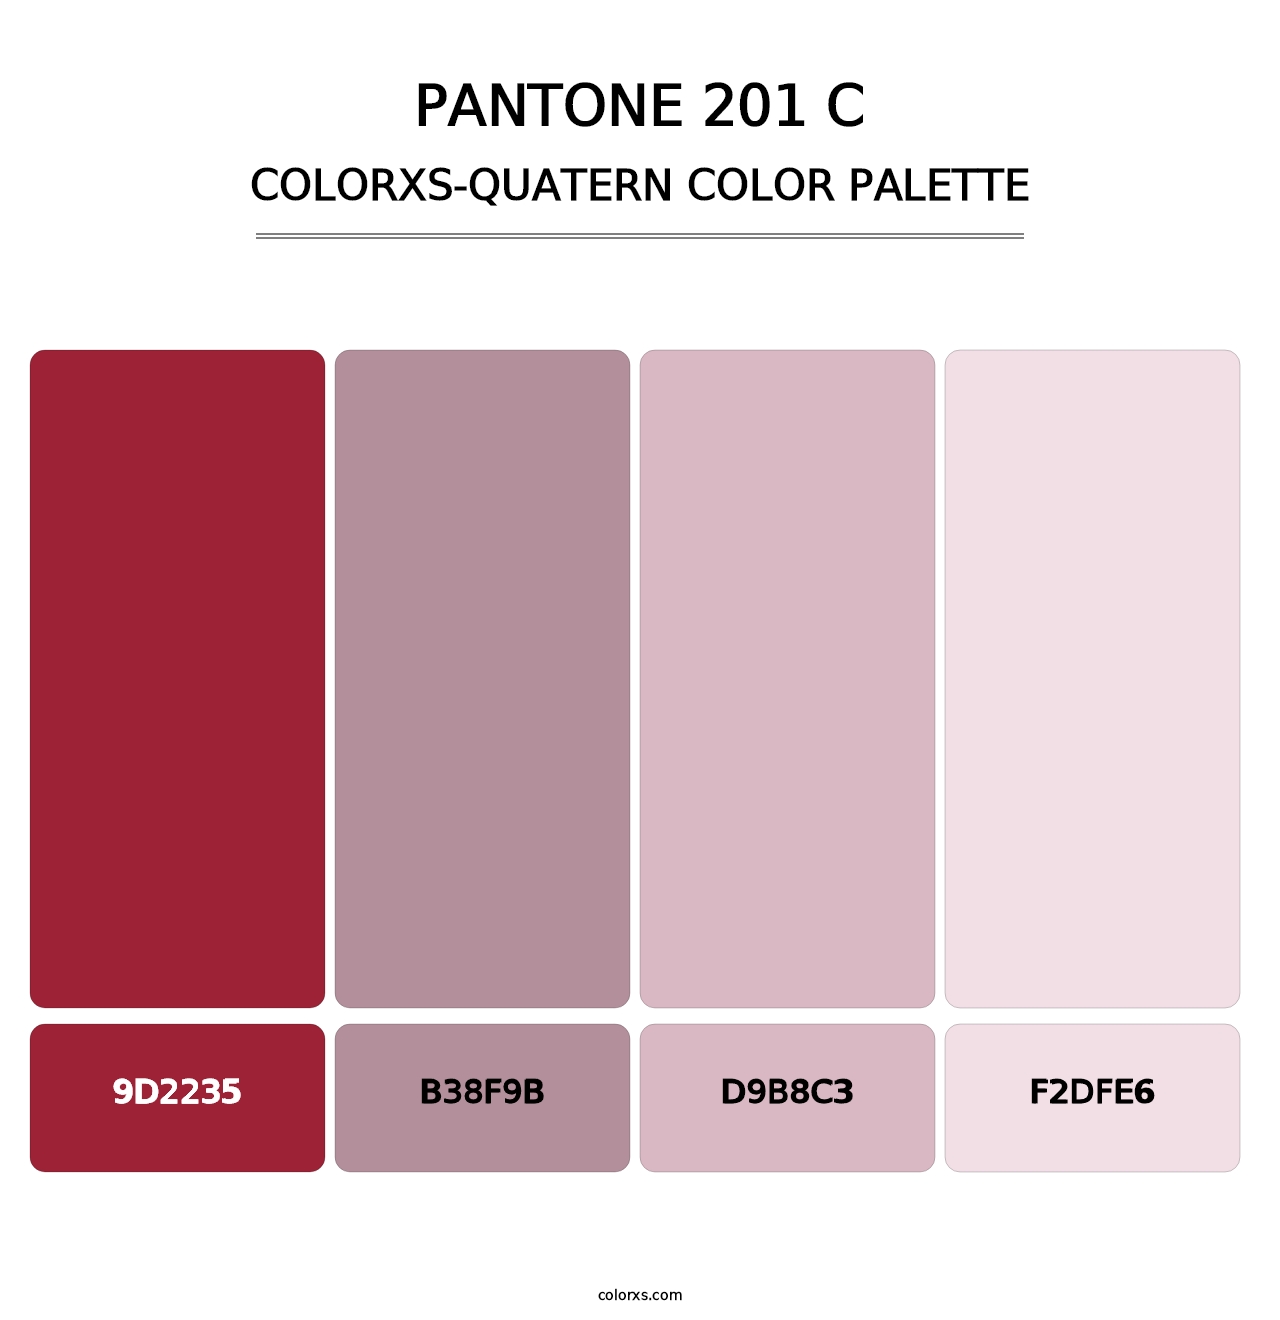 PANTONE 201 C - Colorxs Quatern Palette